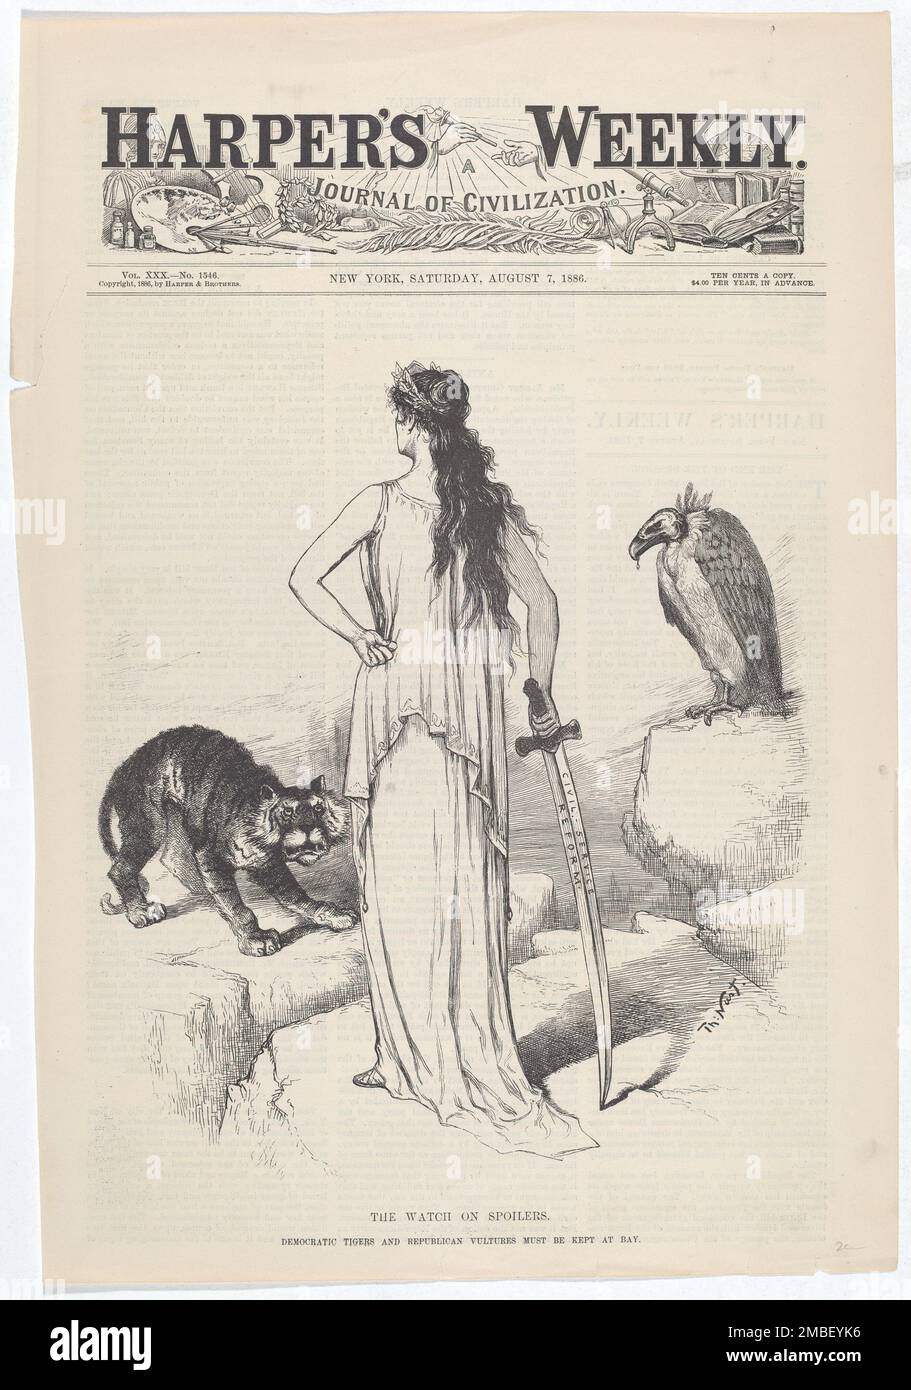 Les spoilers Watch on. Les Tigres démocratiques et les vautours de la République doivent être gardés à Bay., 1886. Banque D'Images